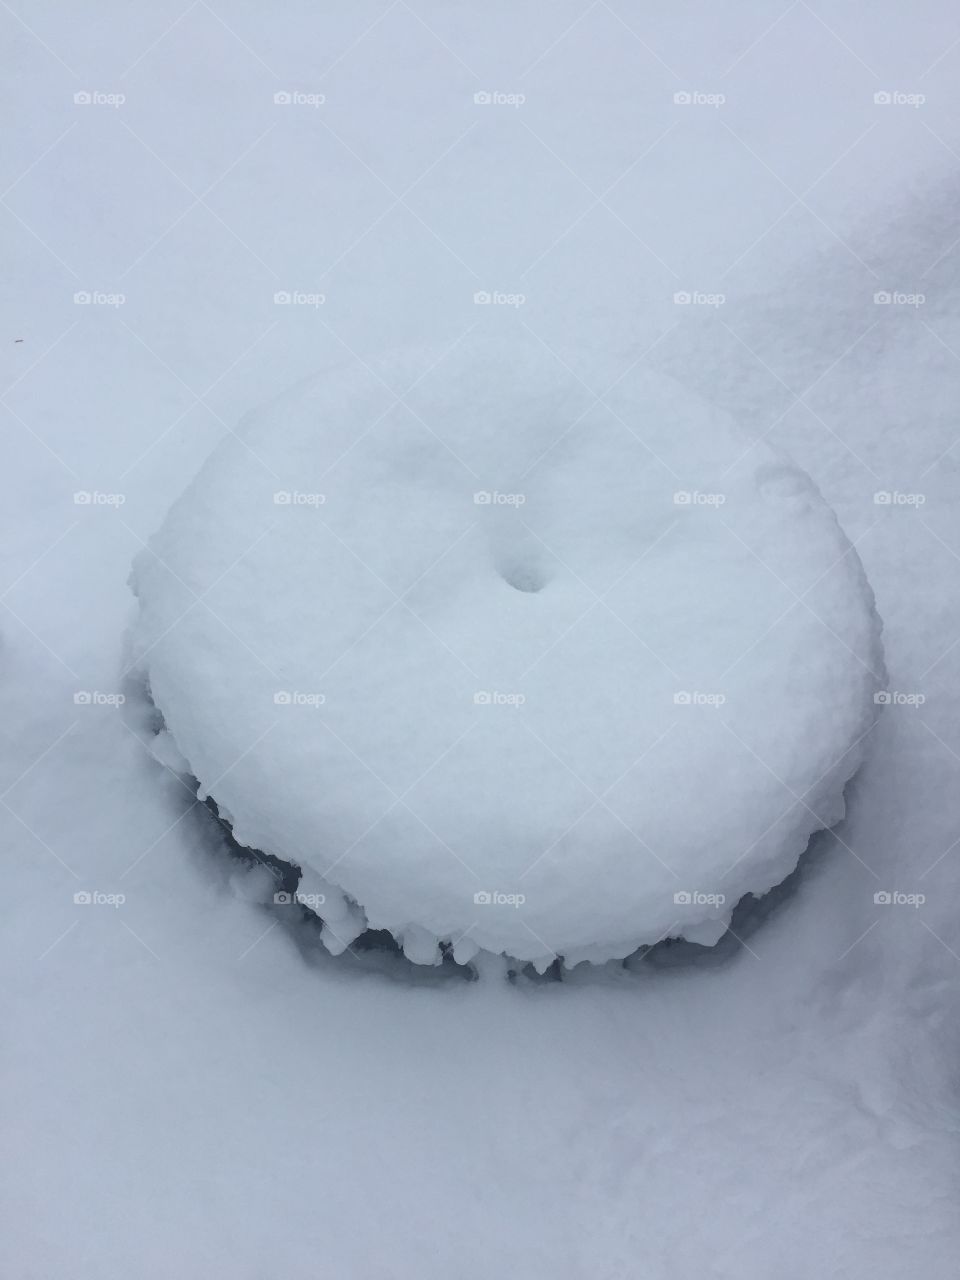 Snow tire